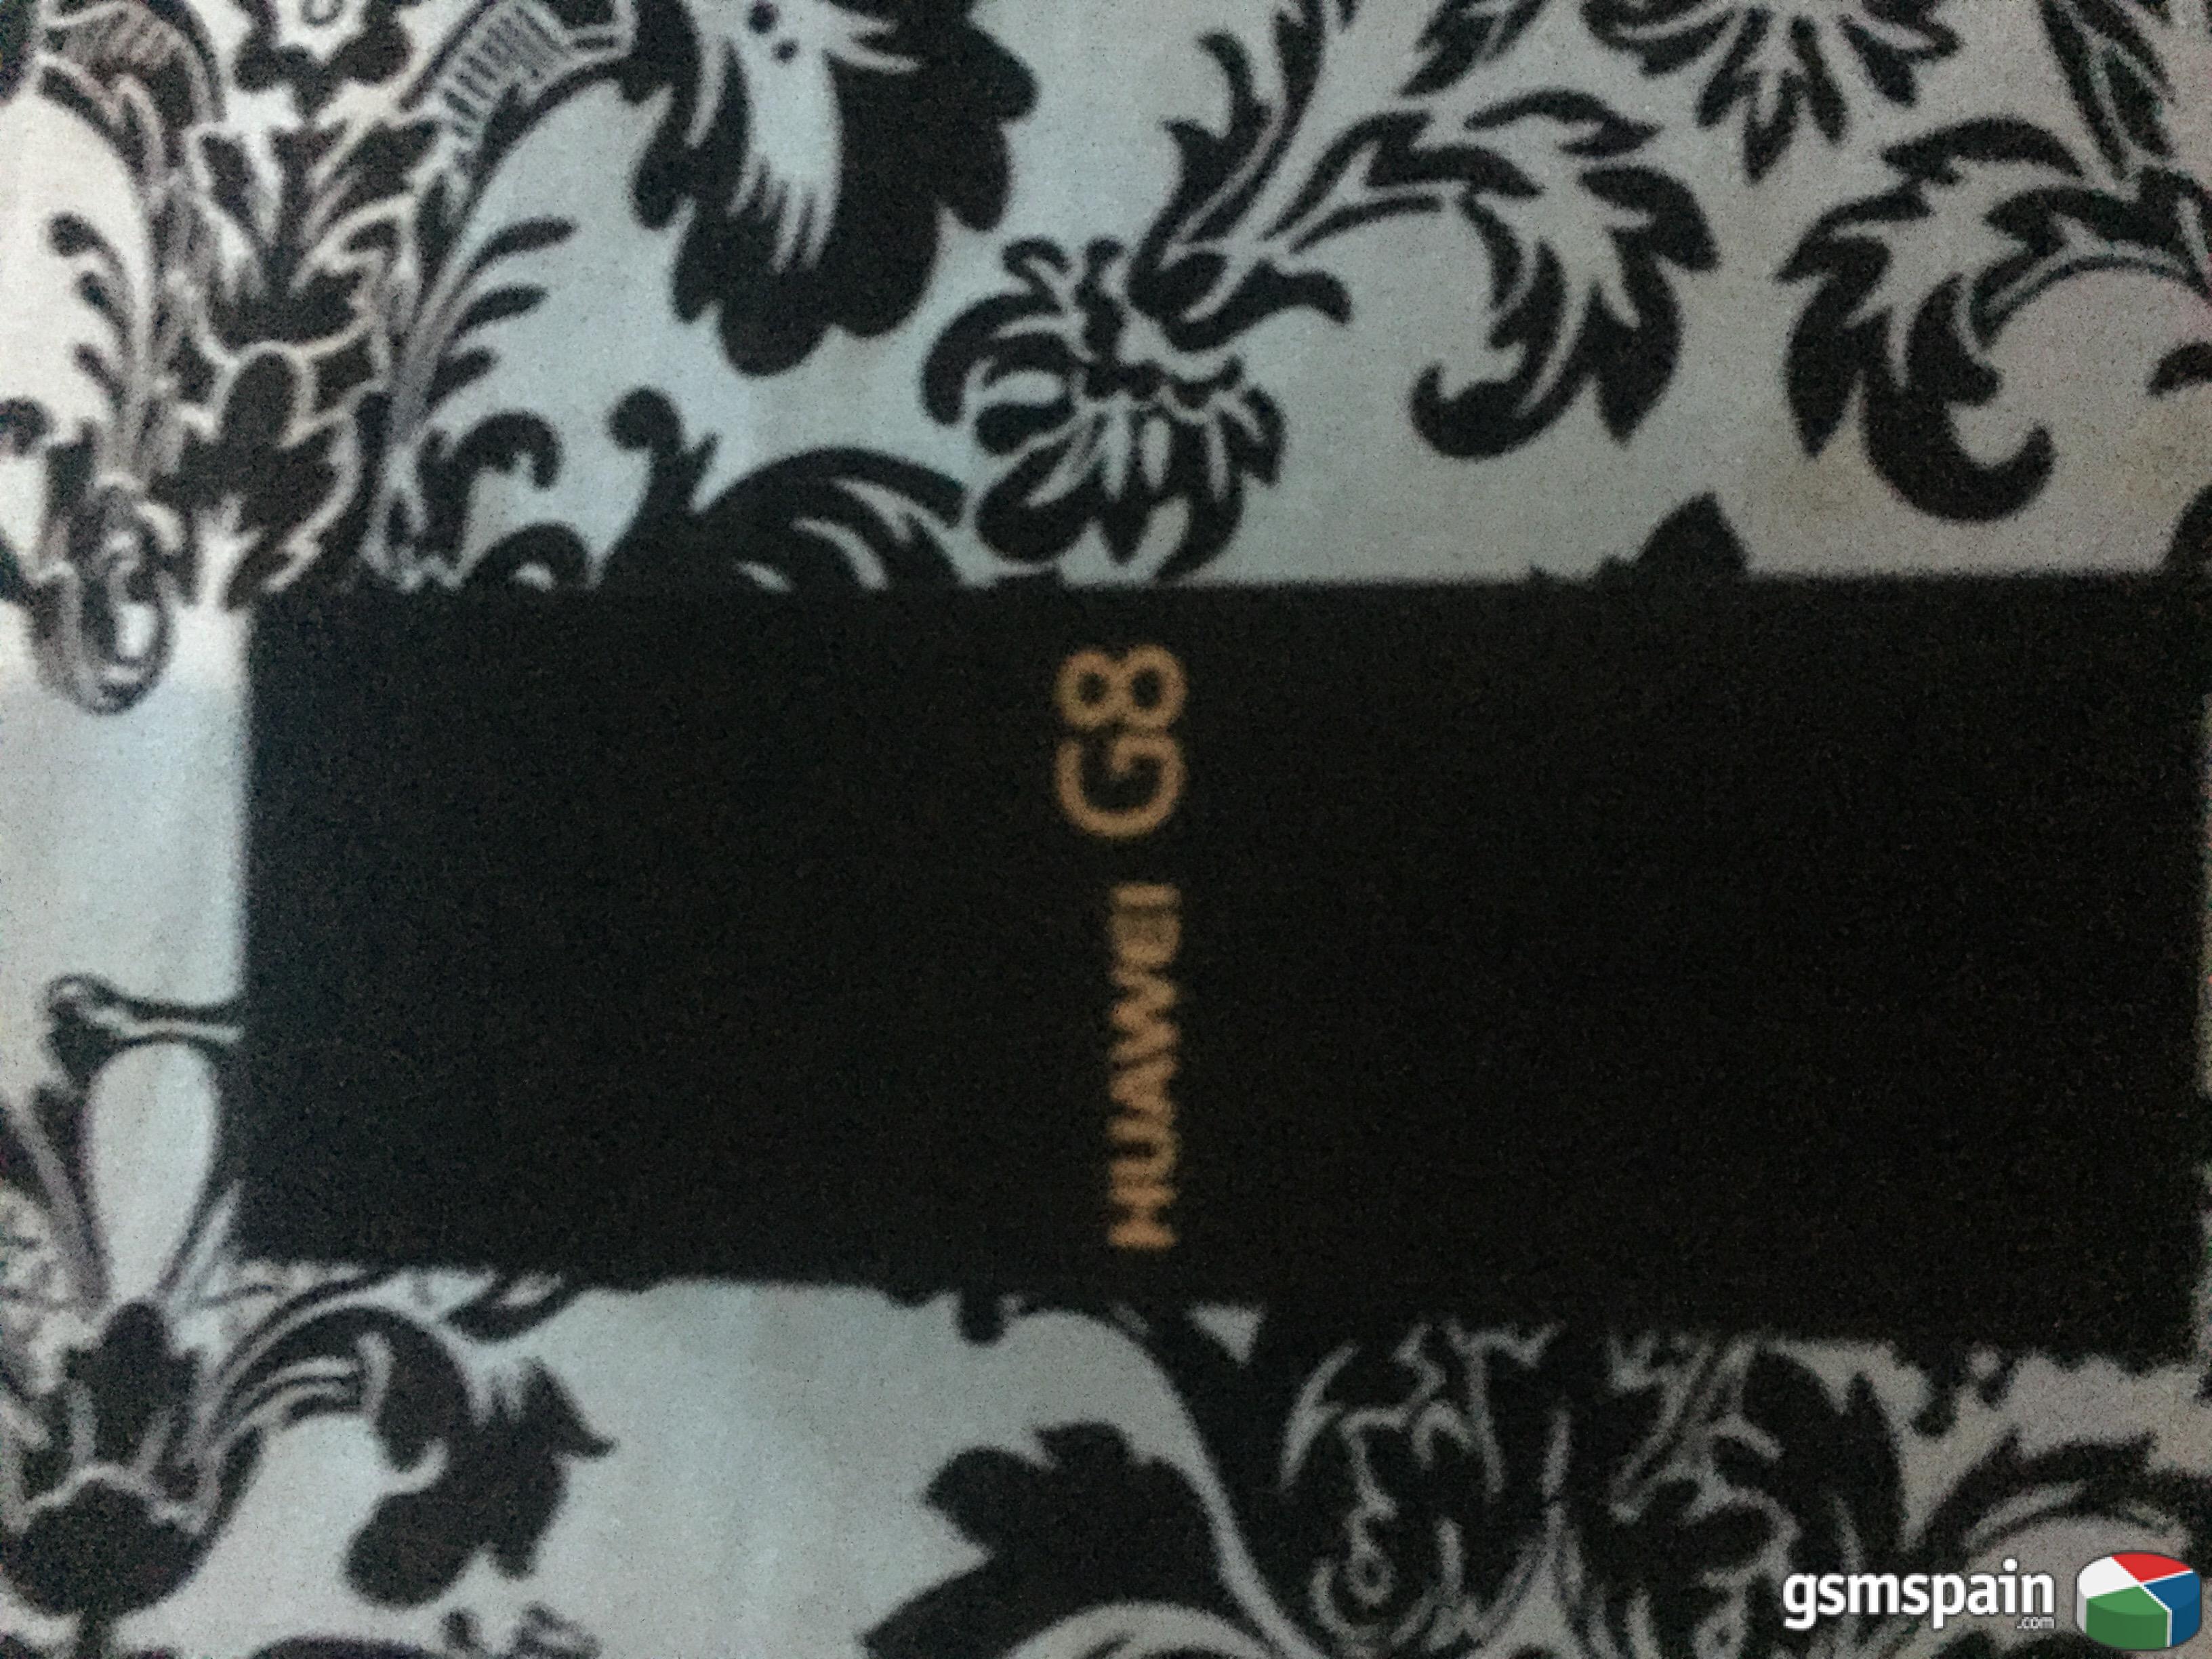 [VENDO] Huawei G8 nuevo + tarjeta 64Gb Vigo